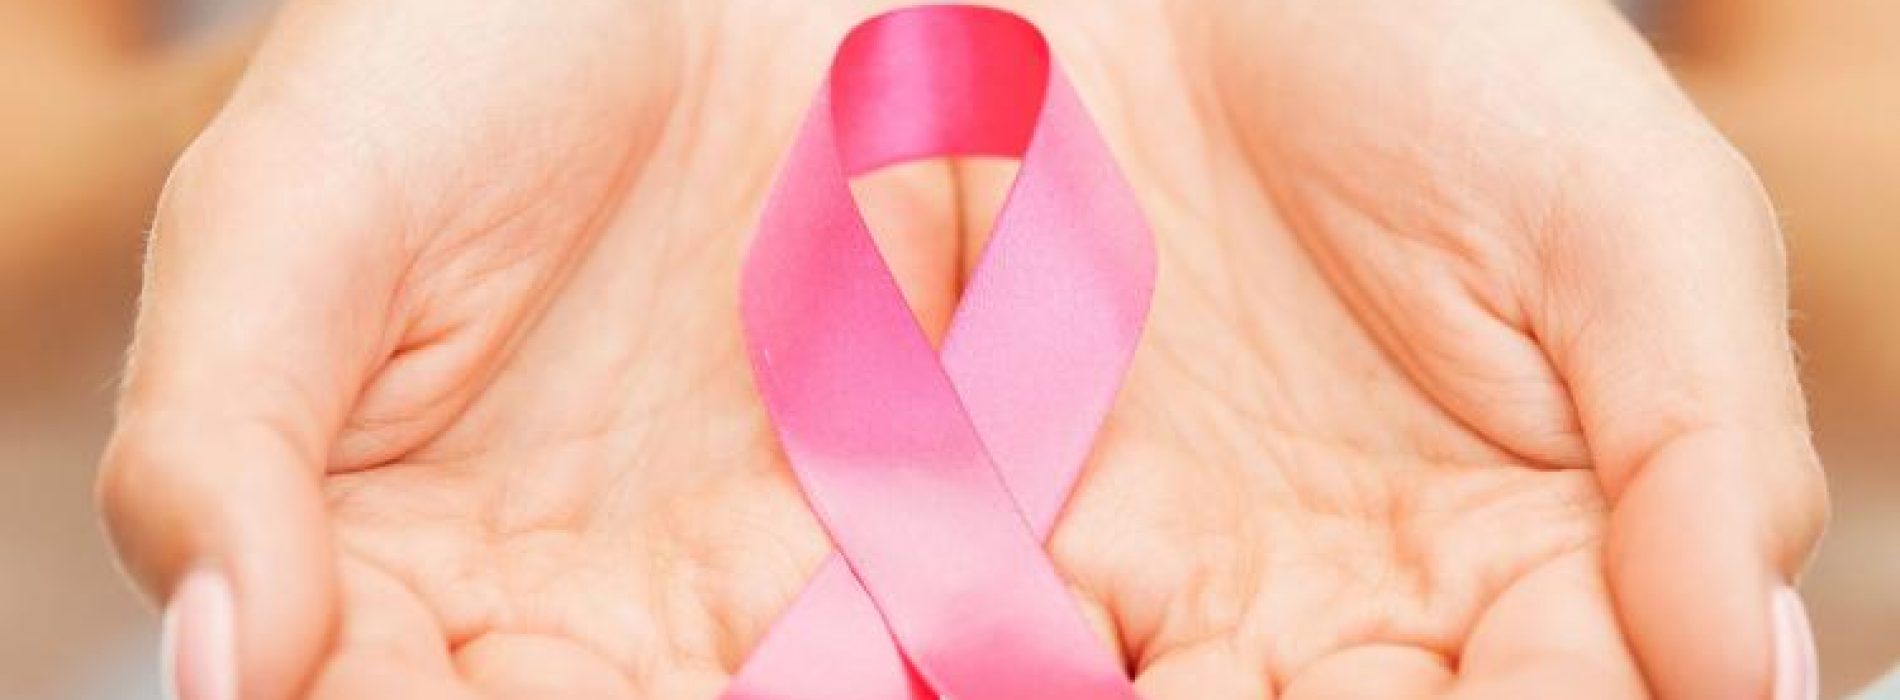 Afzetten borst bij kanker vaak onnodig